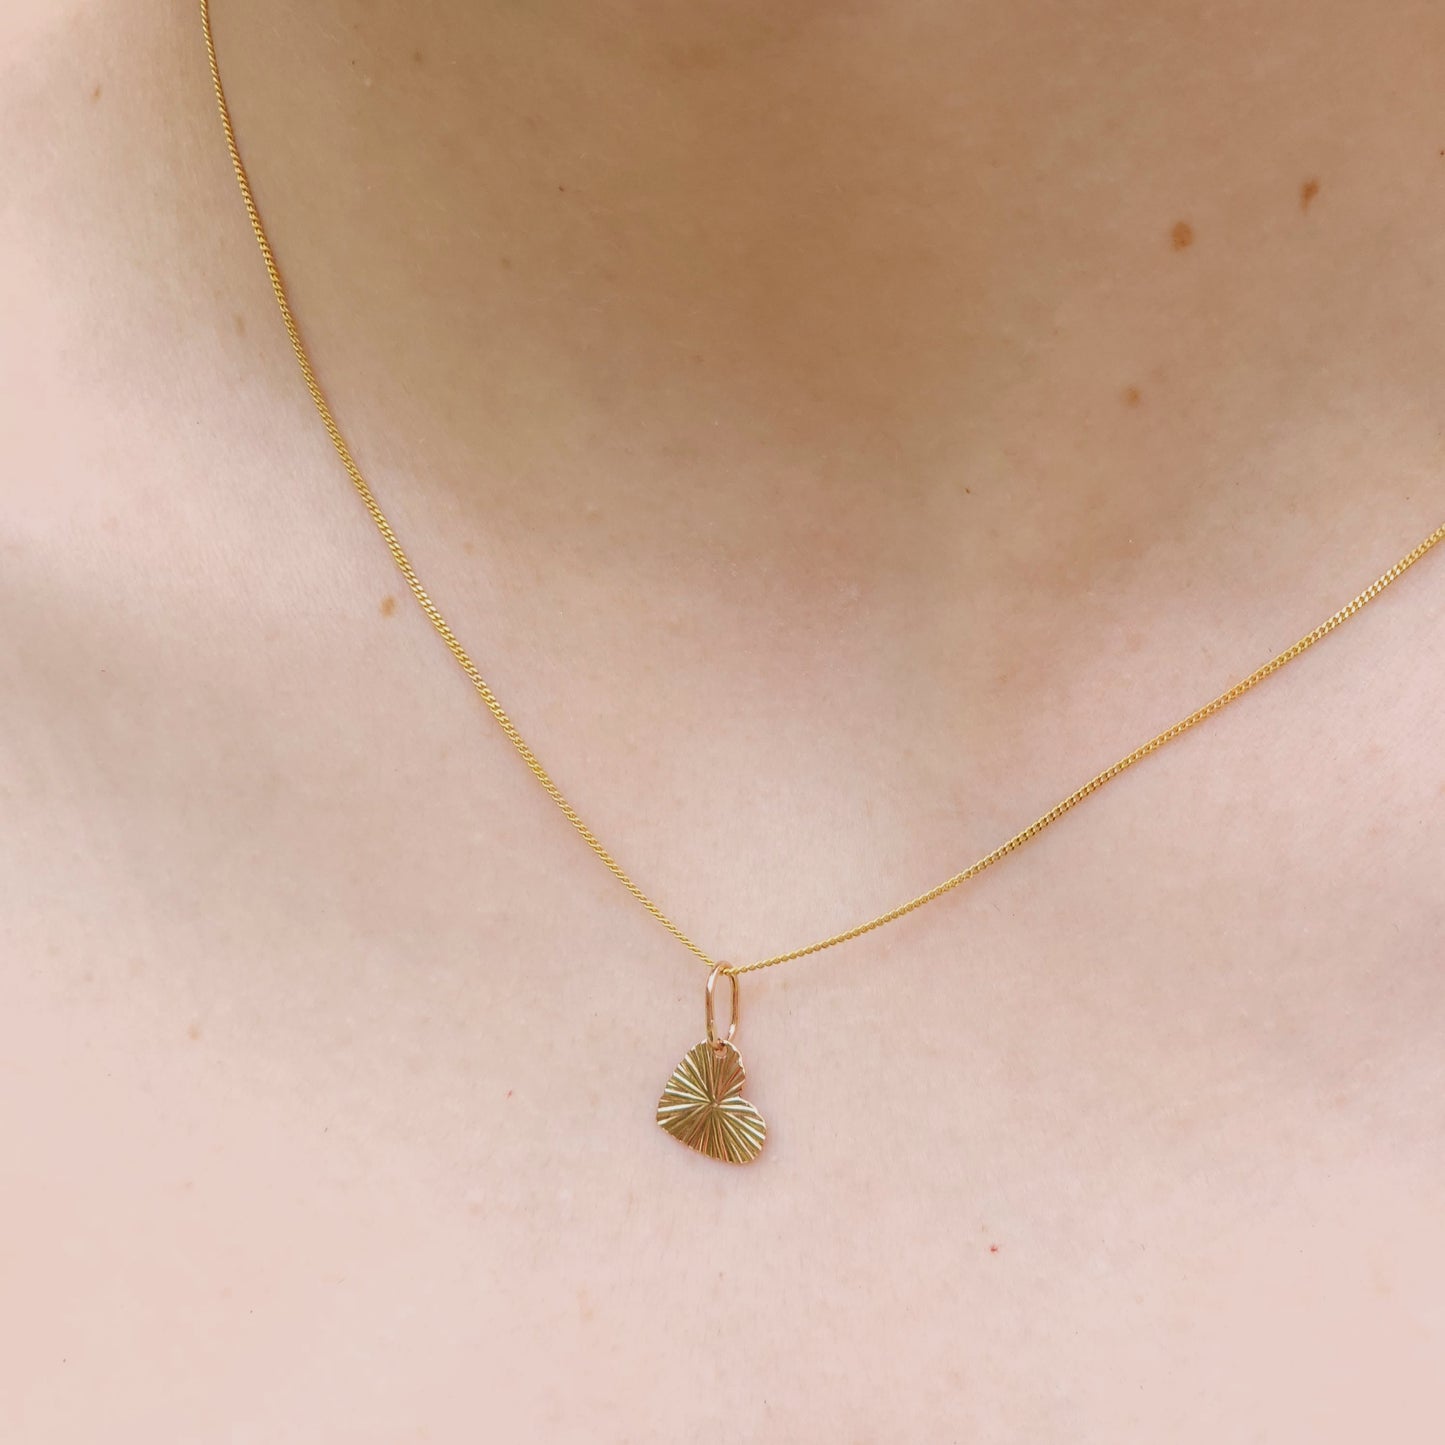 Gold Little Heart Pendant, 9 carat gold, Handmade in Australia